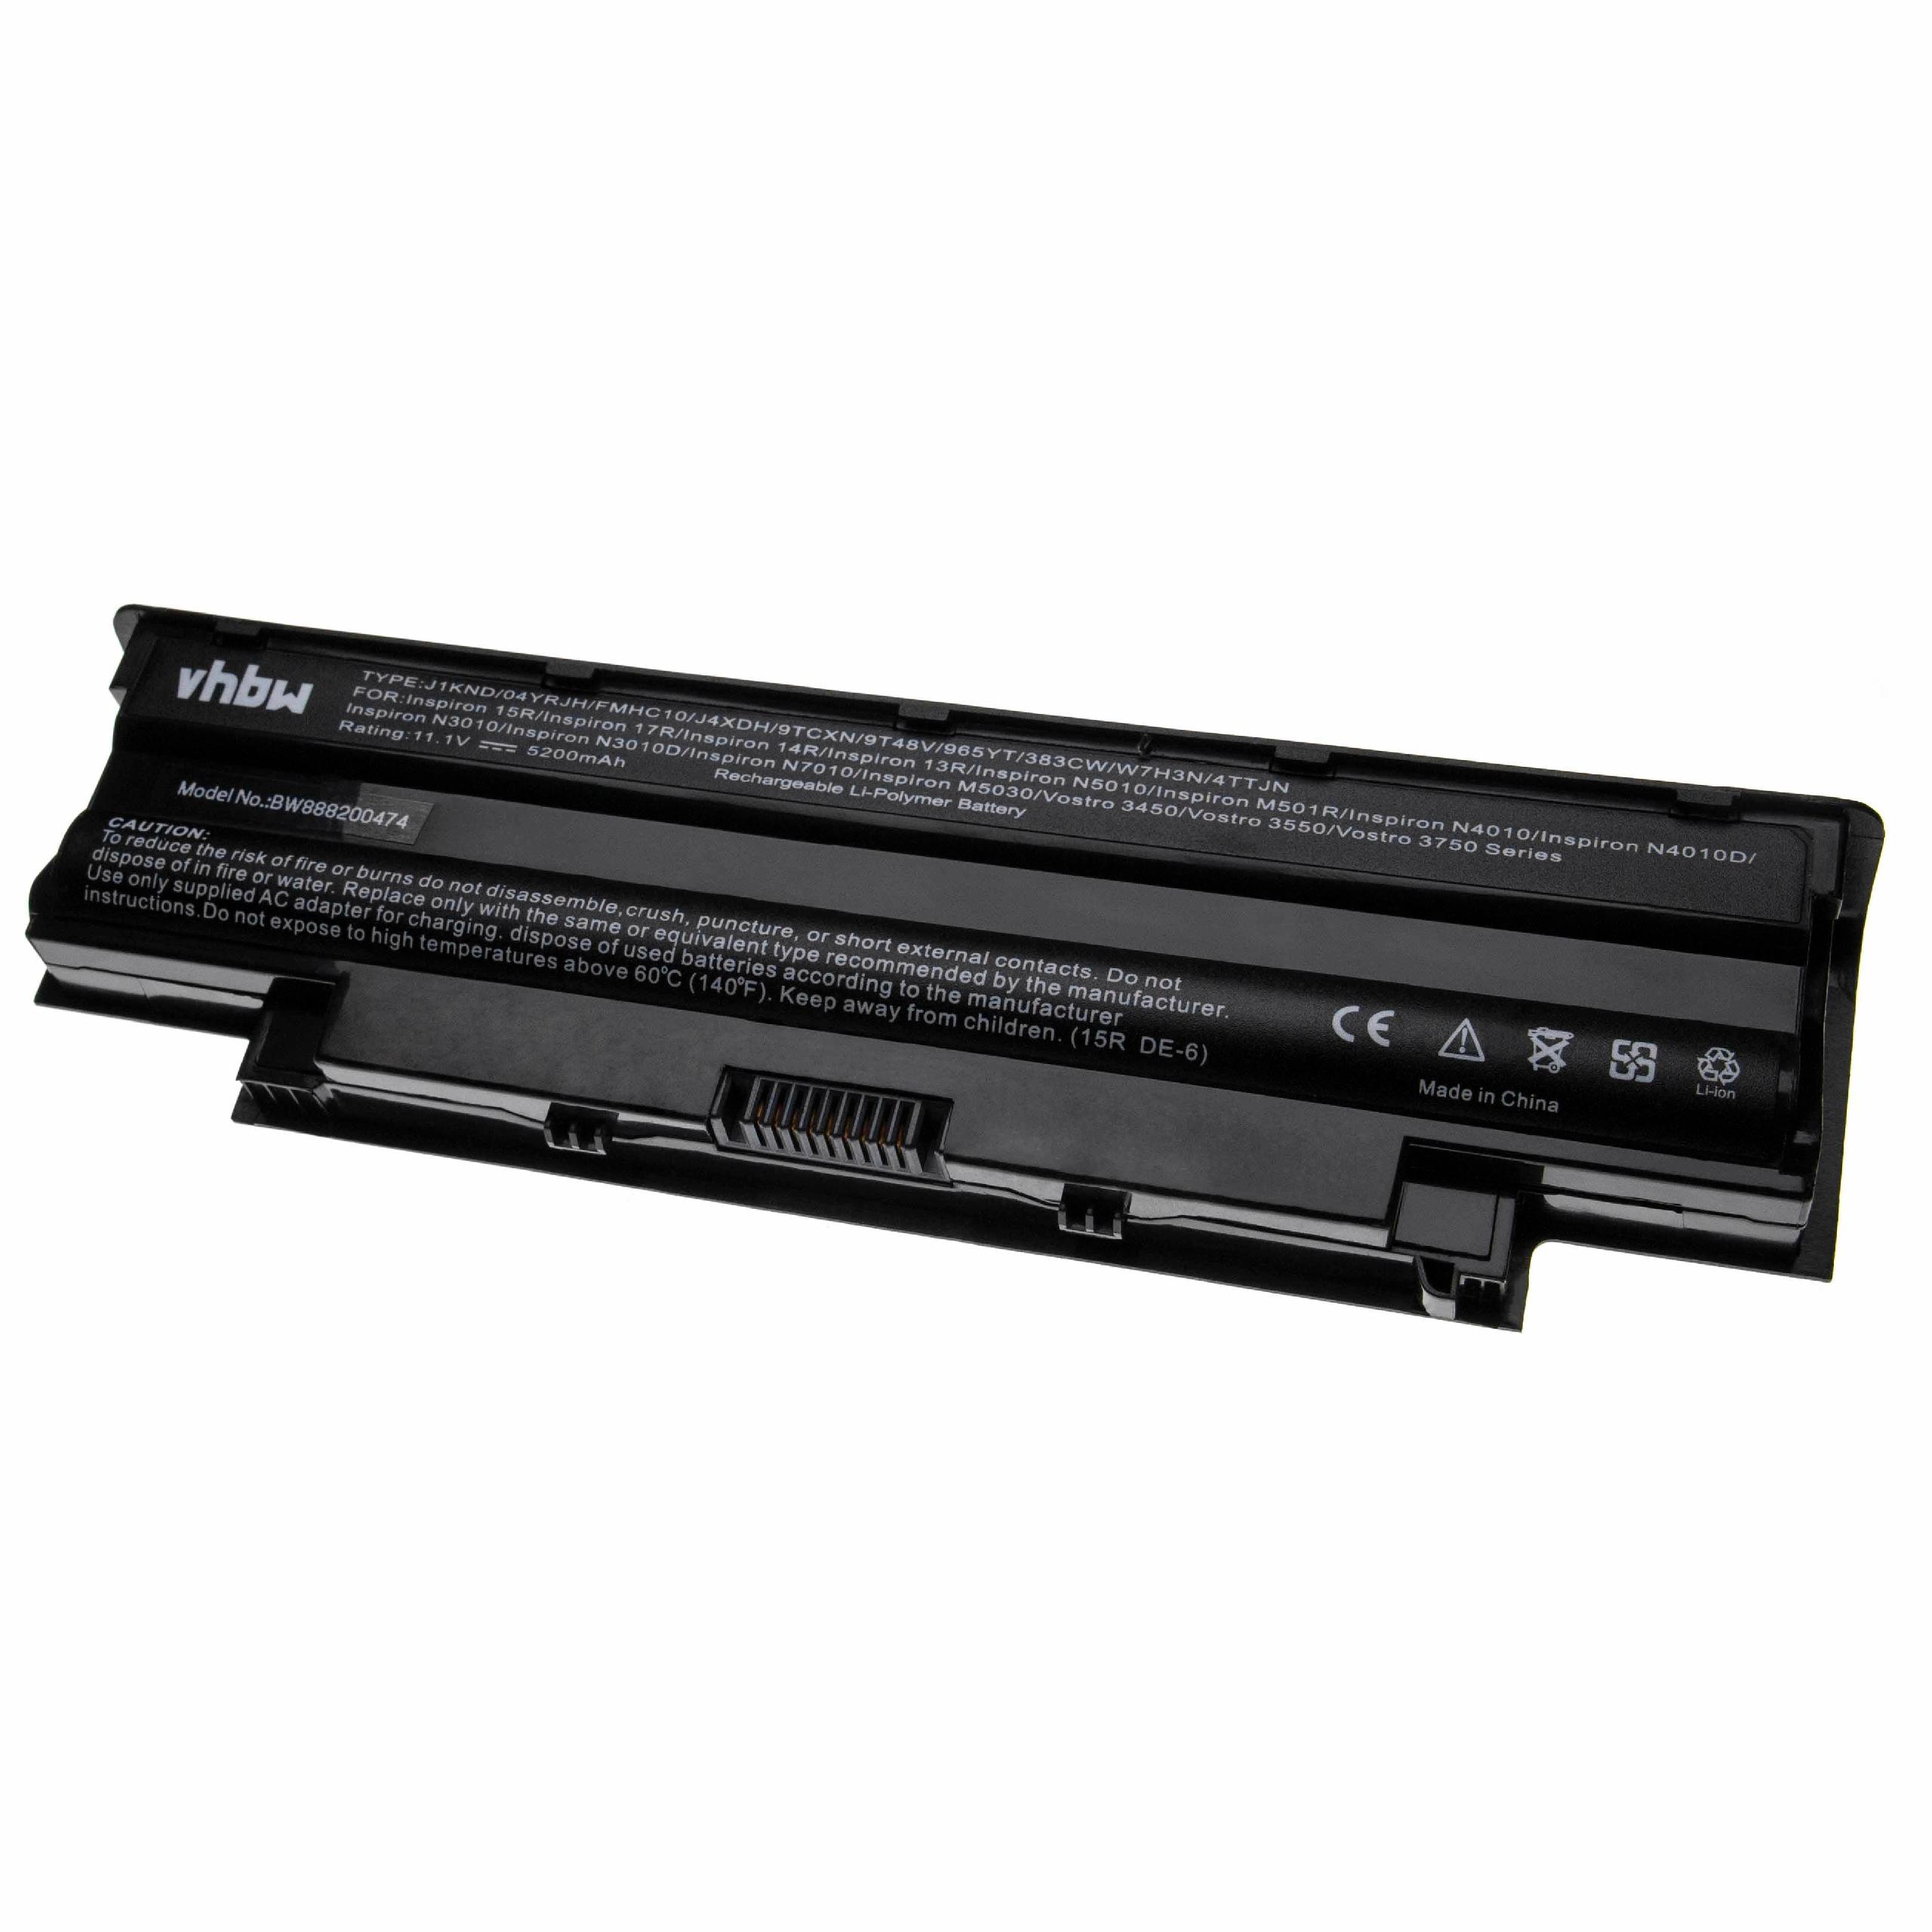 Batterie remplace Dell 04YRJH, 06P6PN, 0383CW pour ordinateur portable - 5200mAh 11,1V Li-polymère, noir